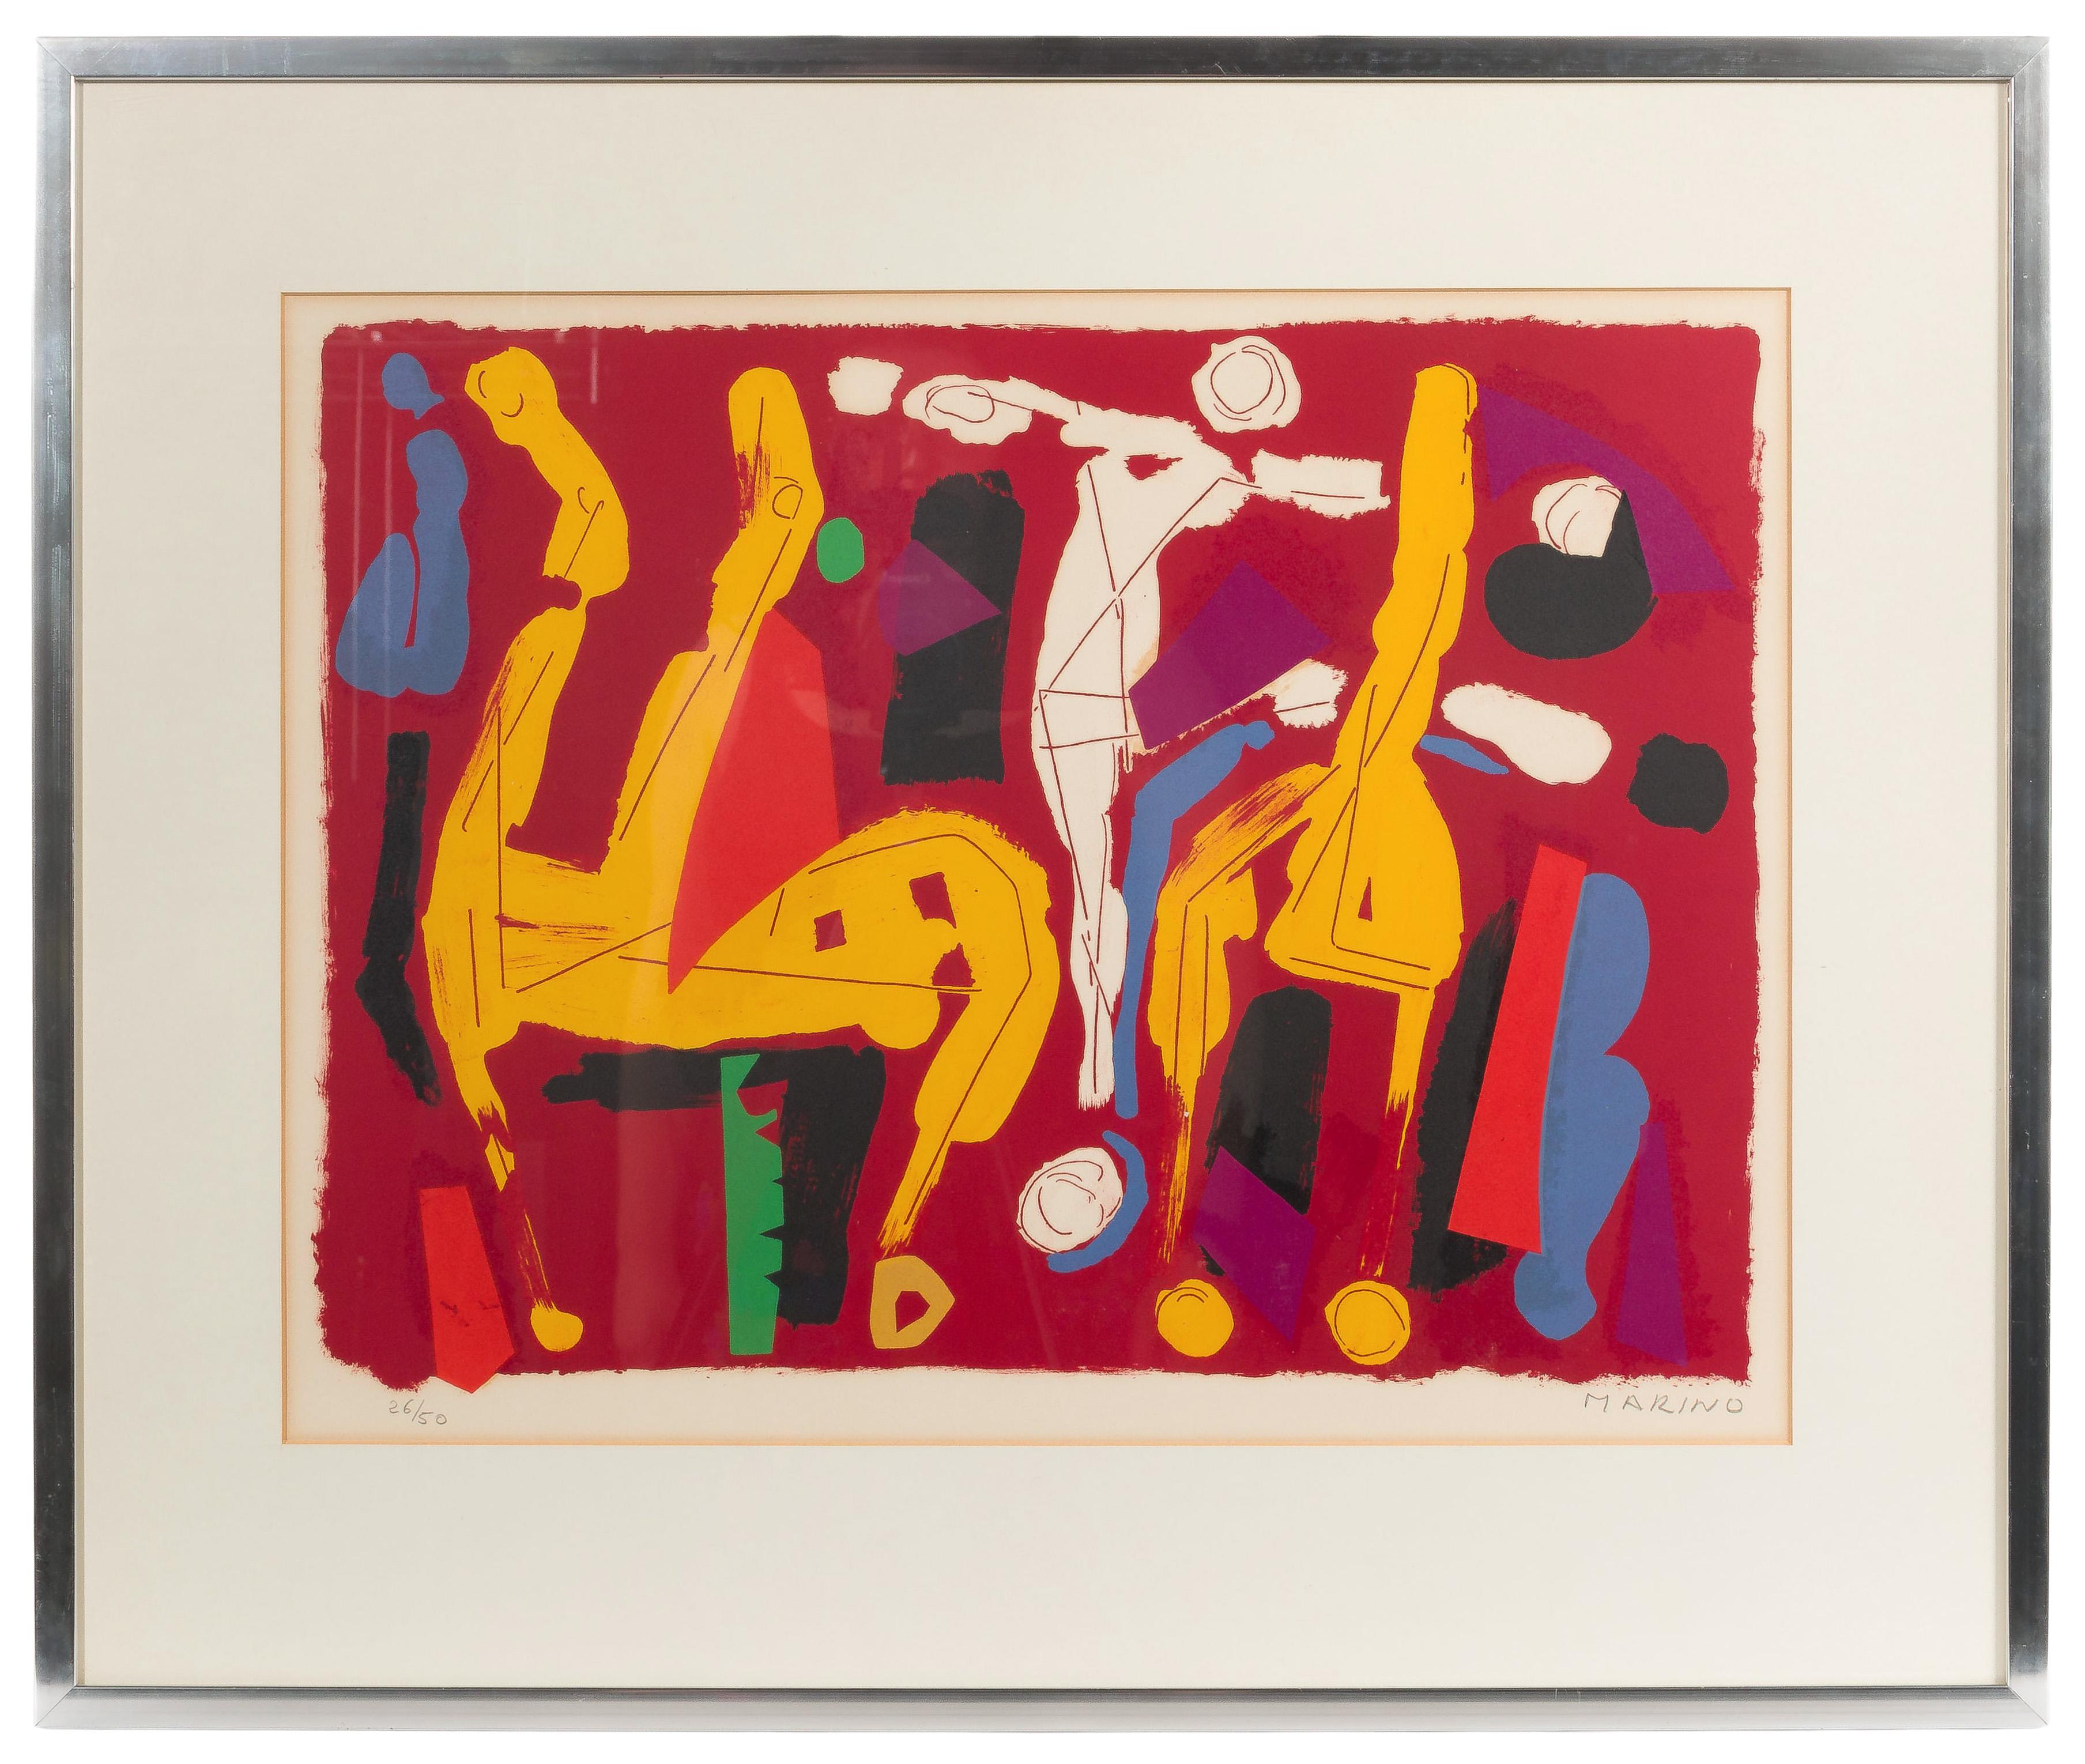 Marino Marini (italien, 1901-1980), « Cheveaux et Cavaliers V » 

Non datée, signée au crayon en bas à droite, numérotée au crayon 26/40 en bas à gauche, représentant une image abstraite, passe-partout derrière le verre dans un cadre doublé de